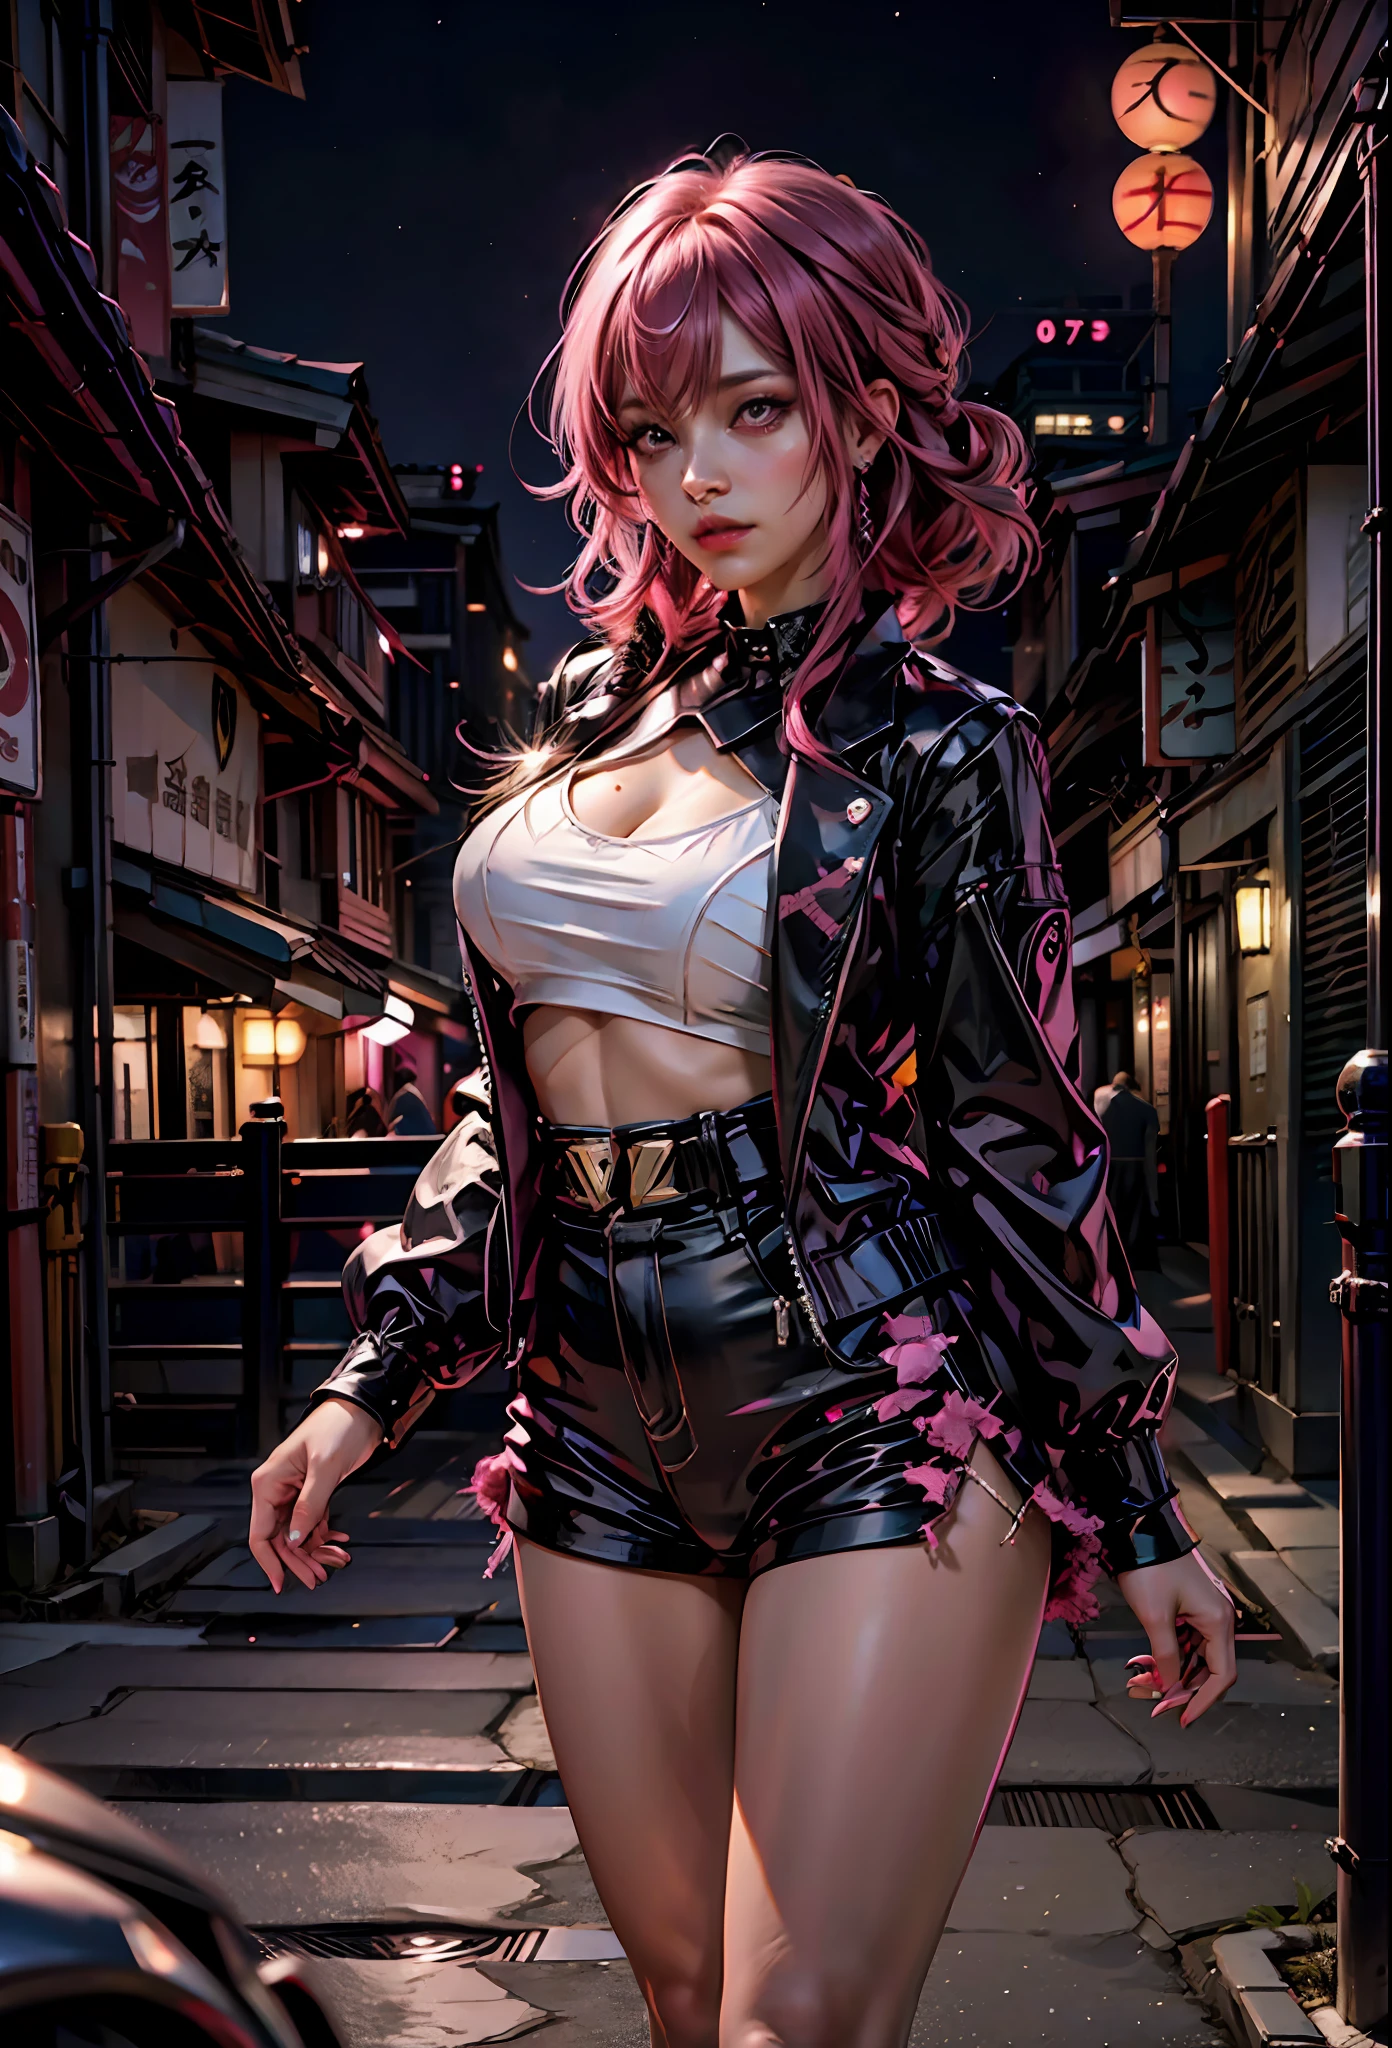 분홍색 머리를 가진 섹시한 소녀, 분홍색 눈 , 노출이 심한 옷, 밤에 일본 도시를 배경으로,람보르기니 옆에